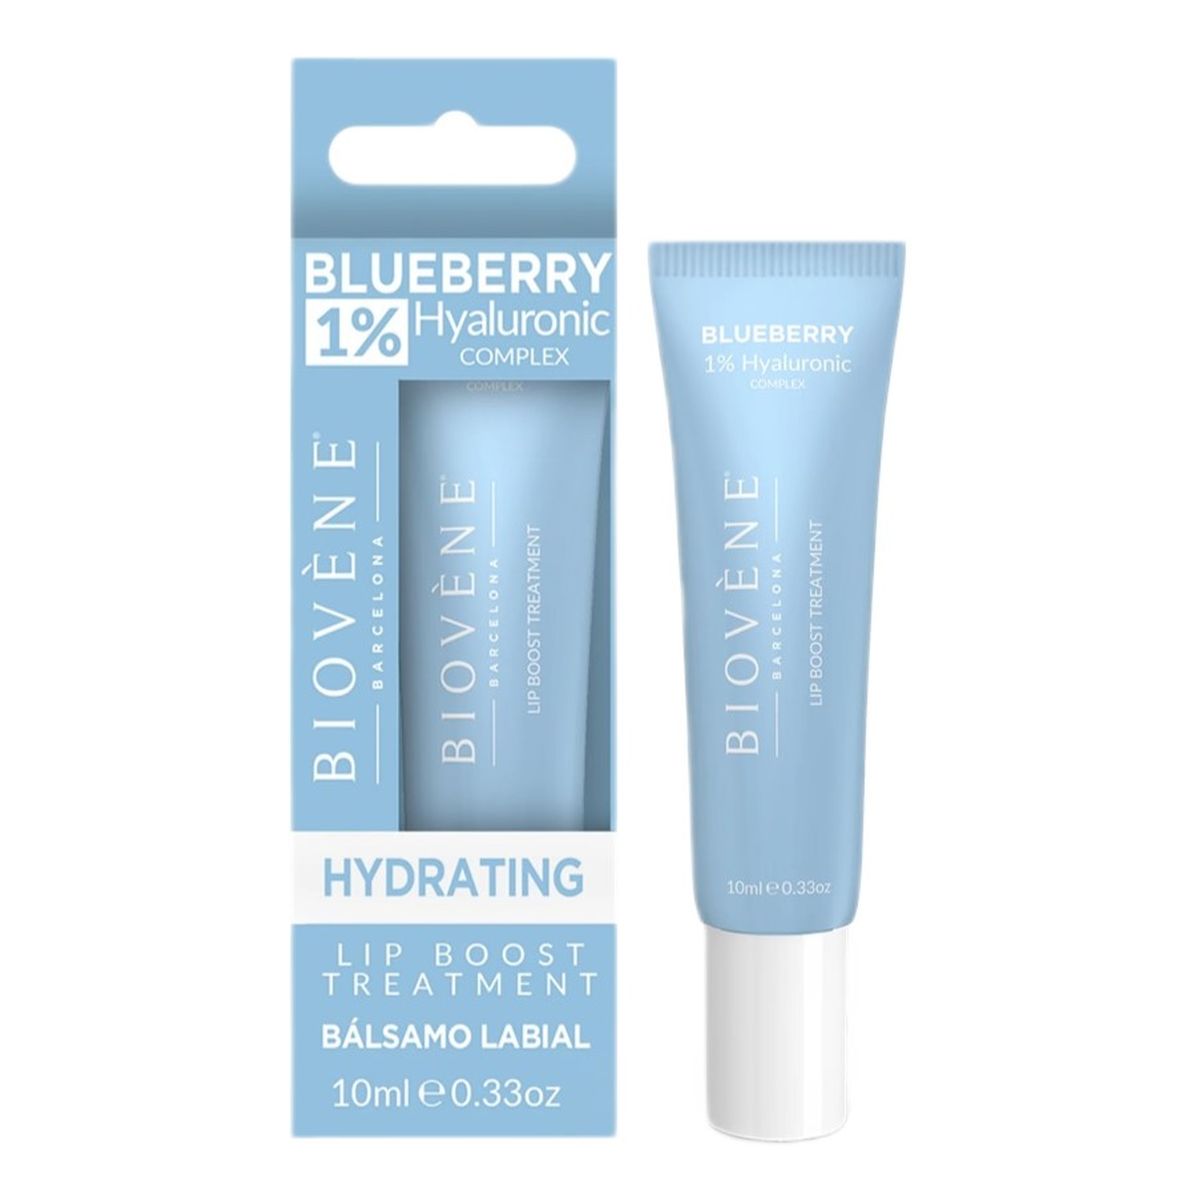 Biovene Blueberry lip boost treatment nawilżające serum do ust z 1% kwasu hialuronowego 10ml